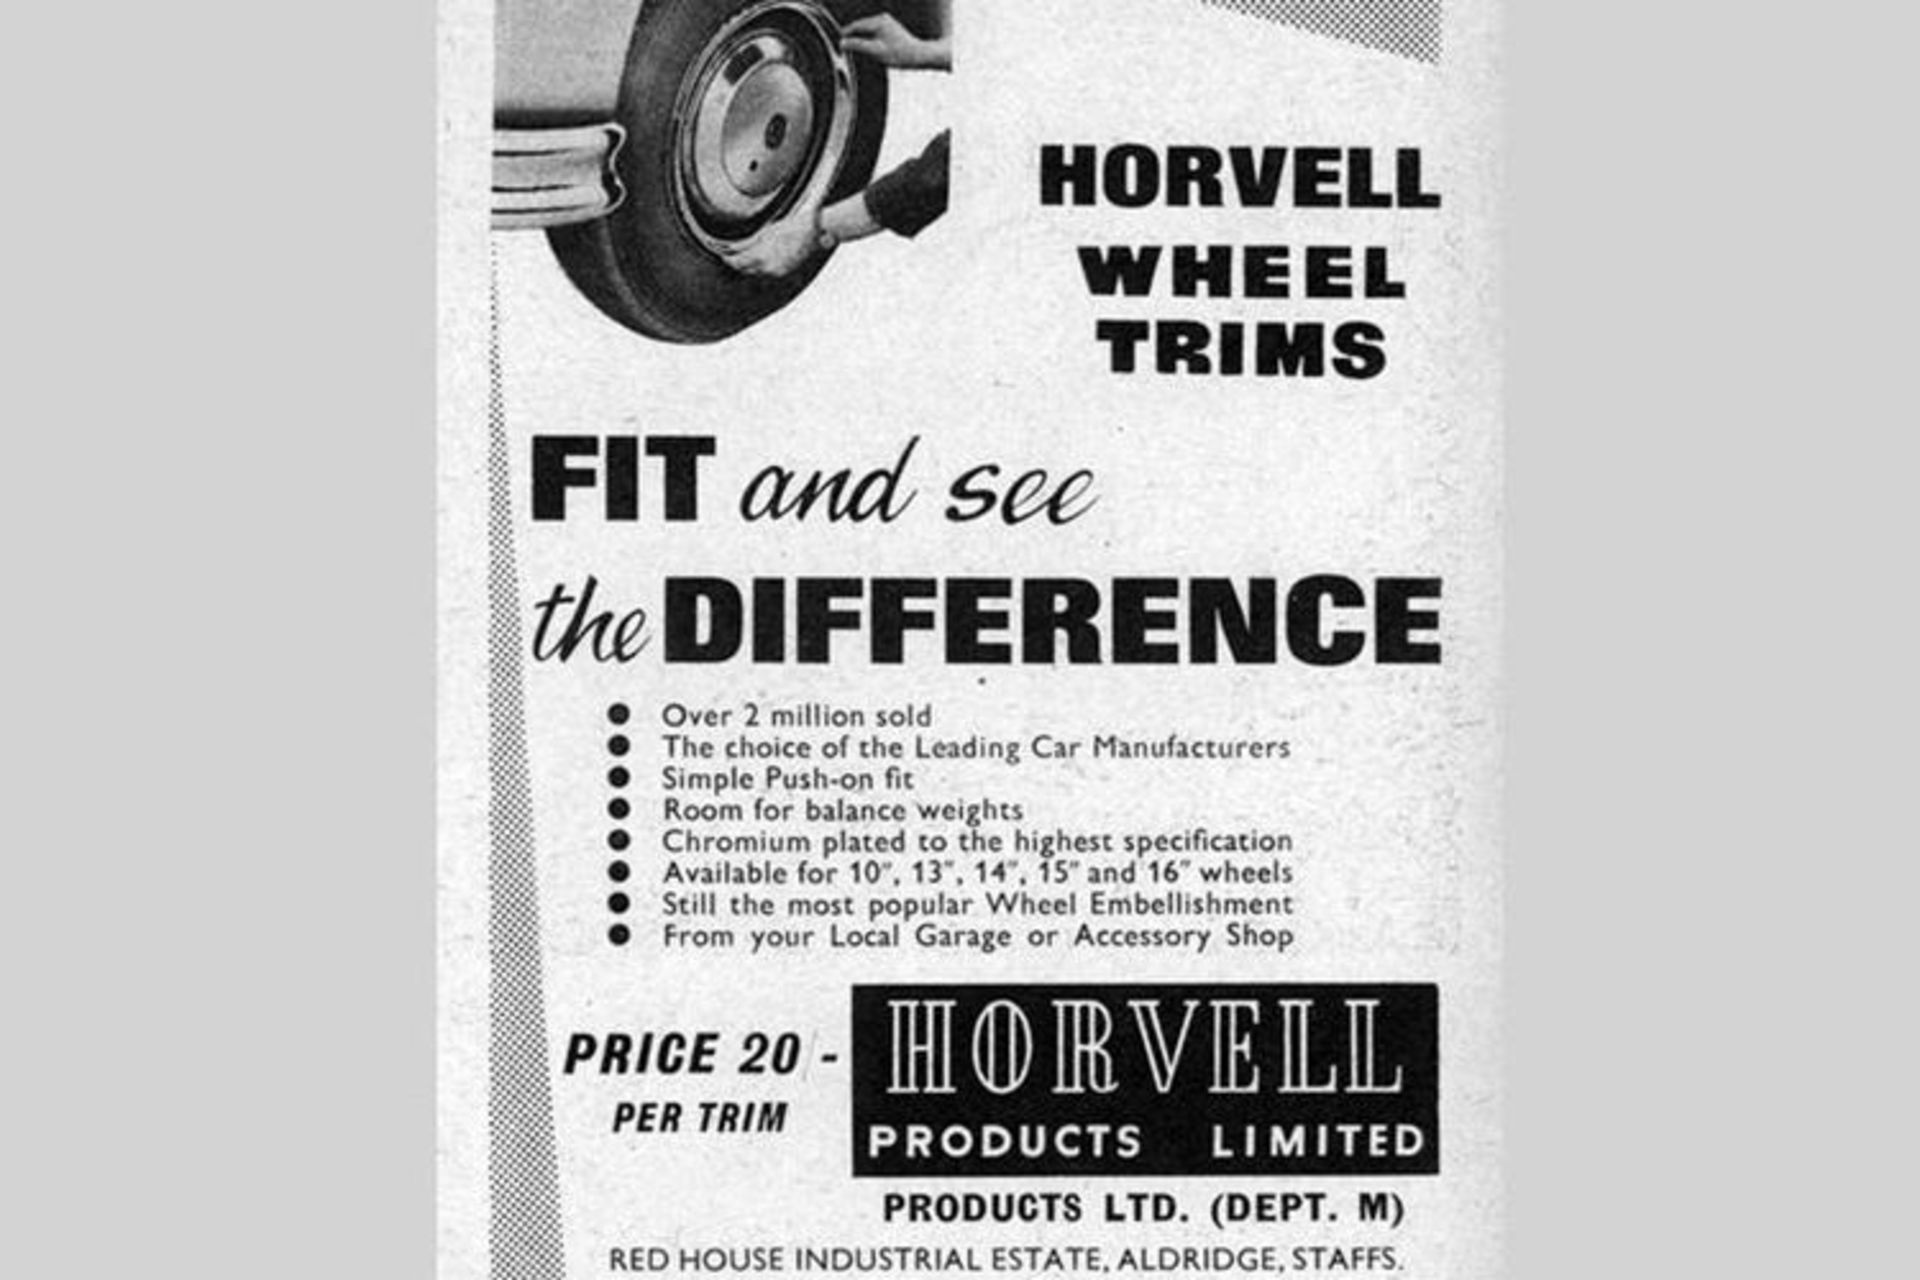 Horvell wheel trims